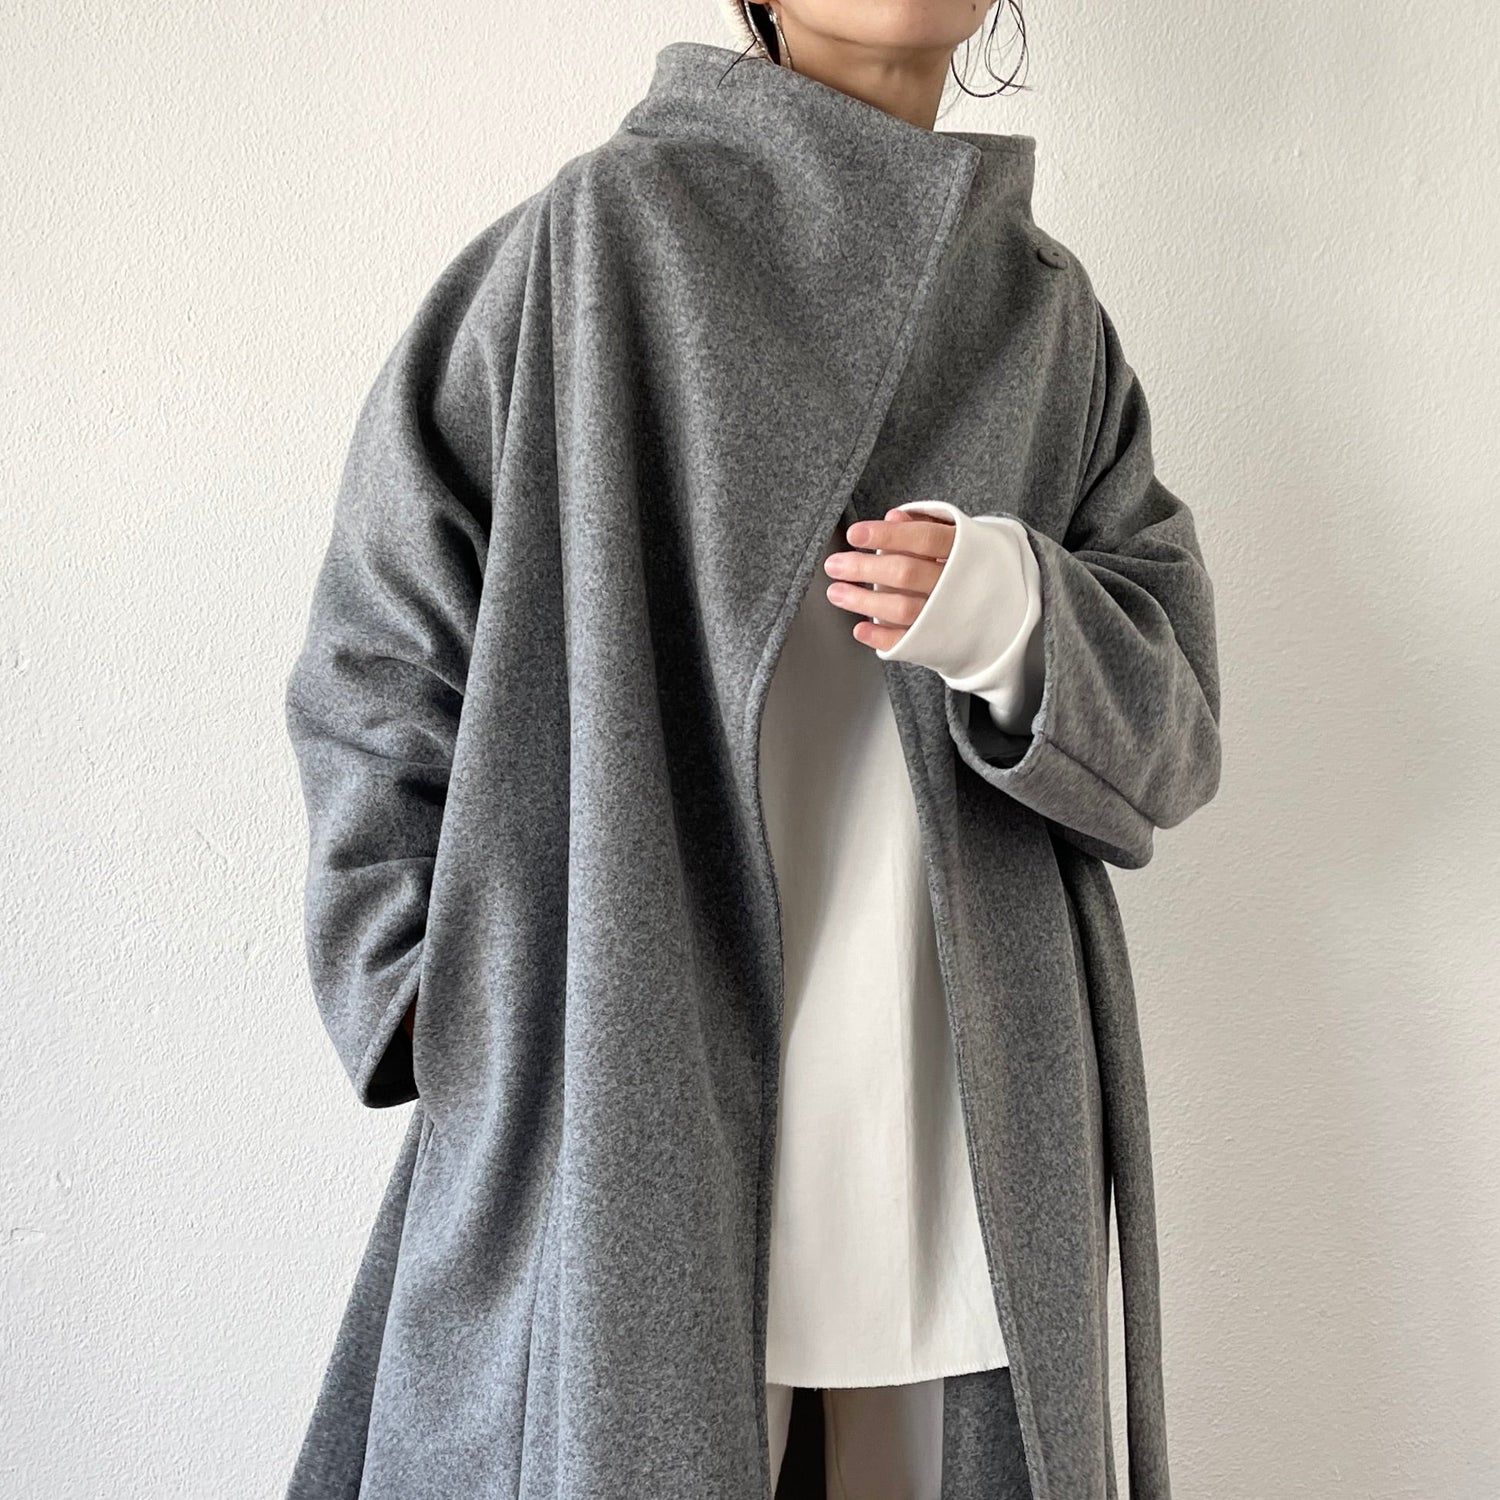 【SAMPLE】daily daily buddy coat / gray